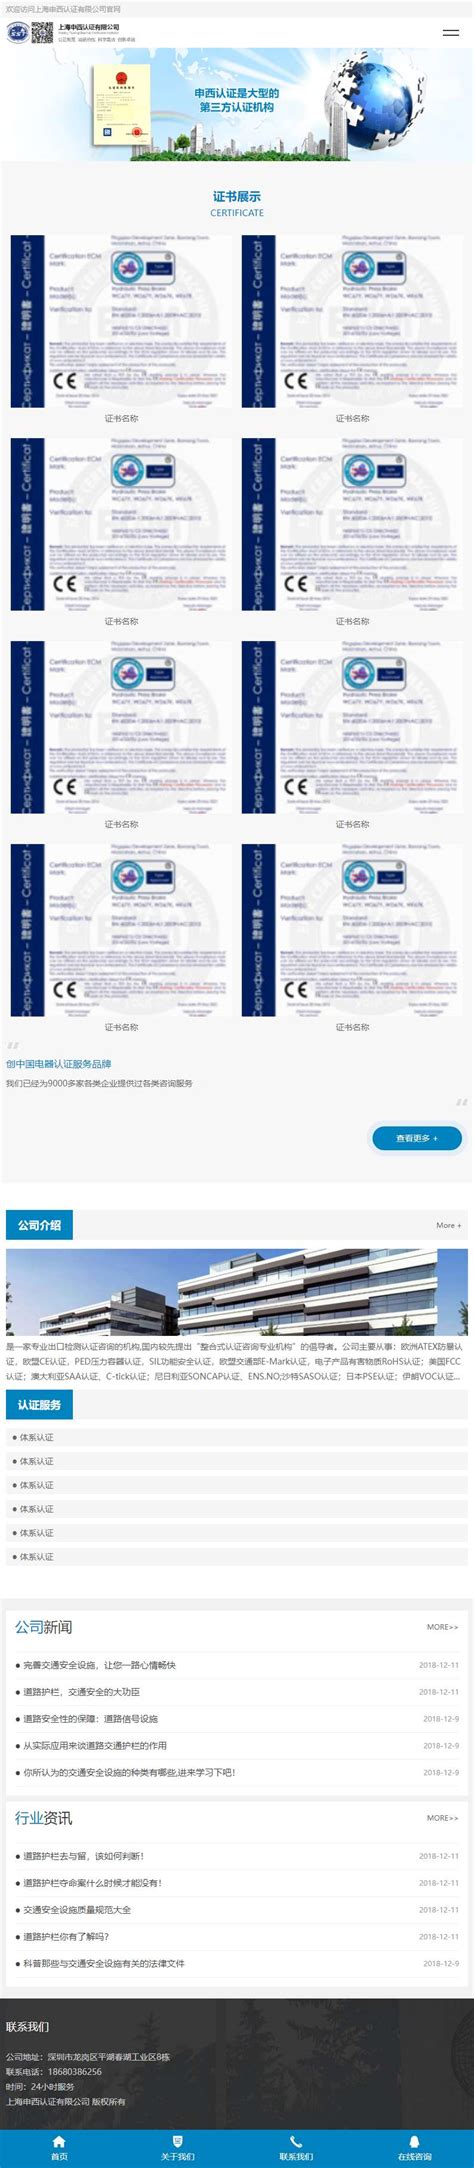 香港认证中心 - 新闻中心 - 推广优惠